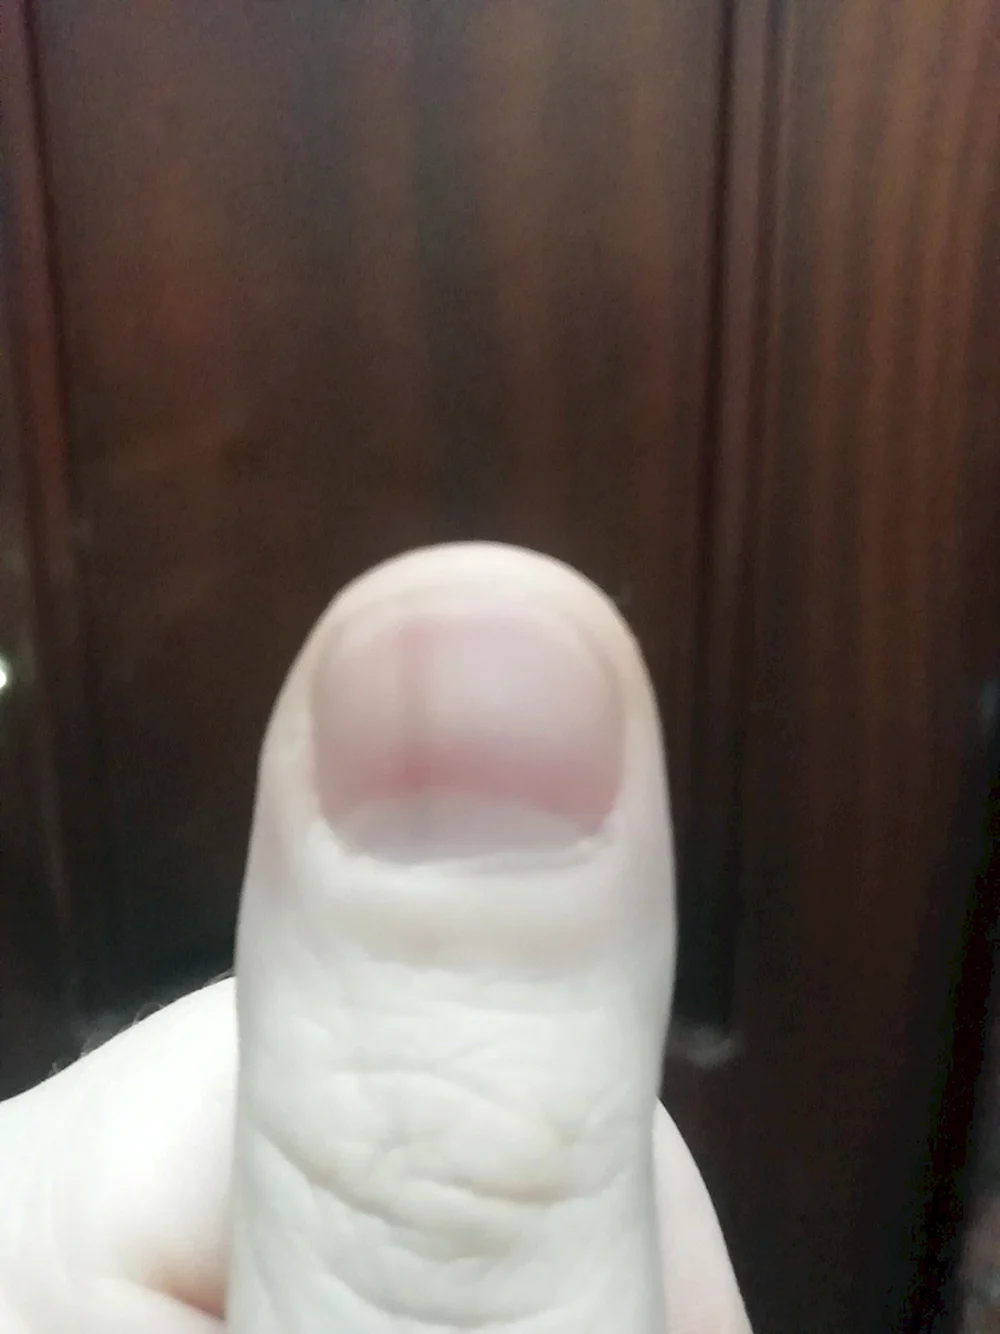 Продольная полоска на ногте большого пальца